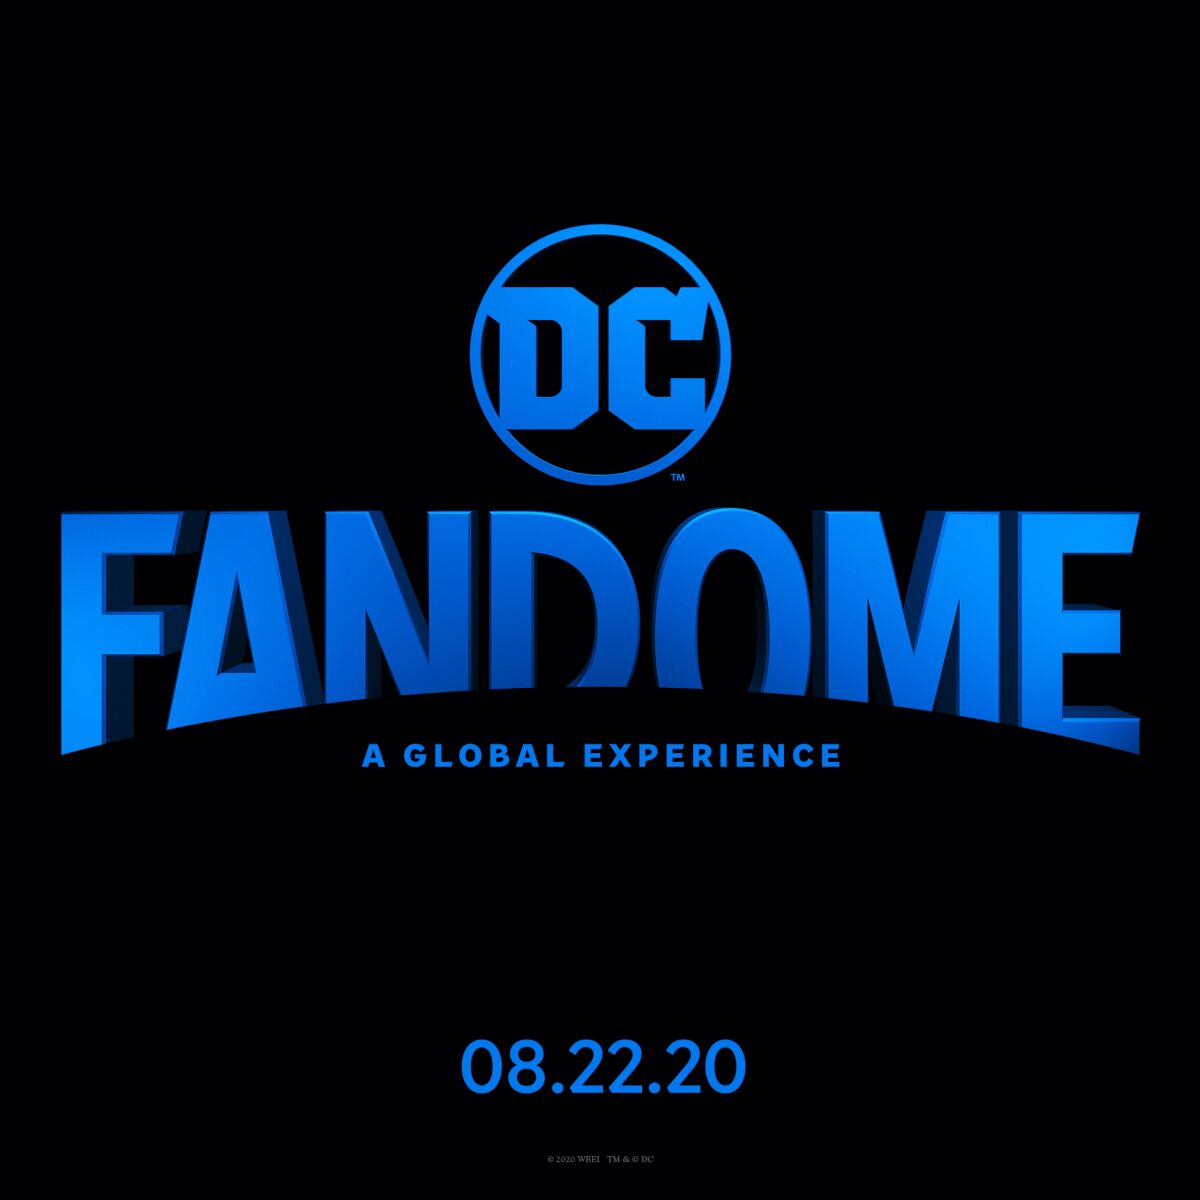 The logo for DC FanDome